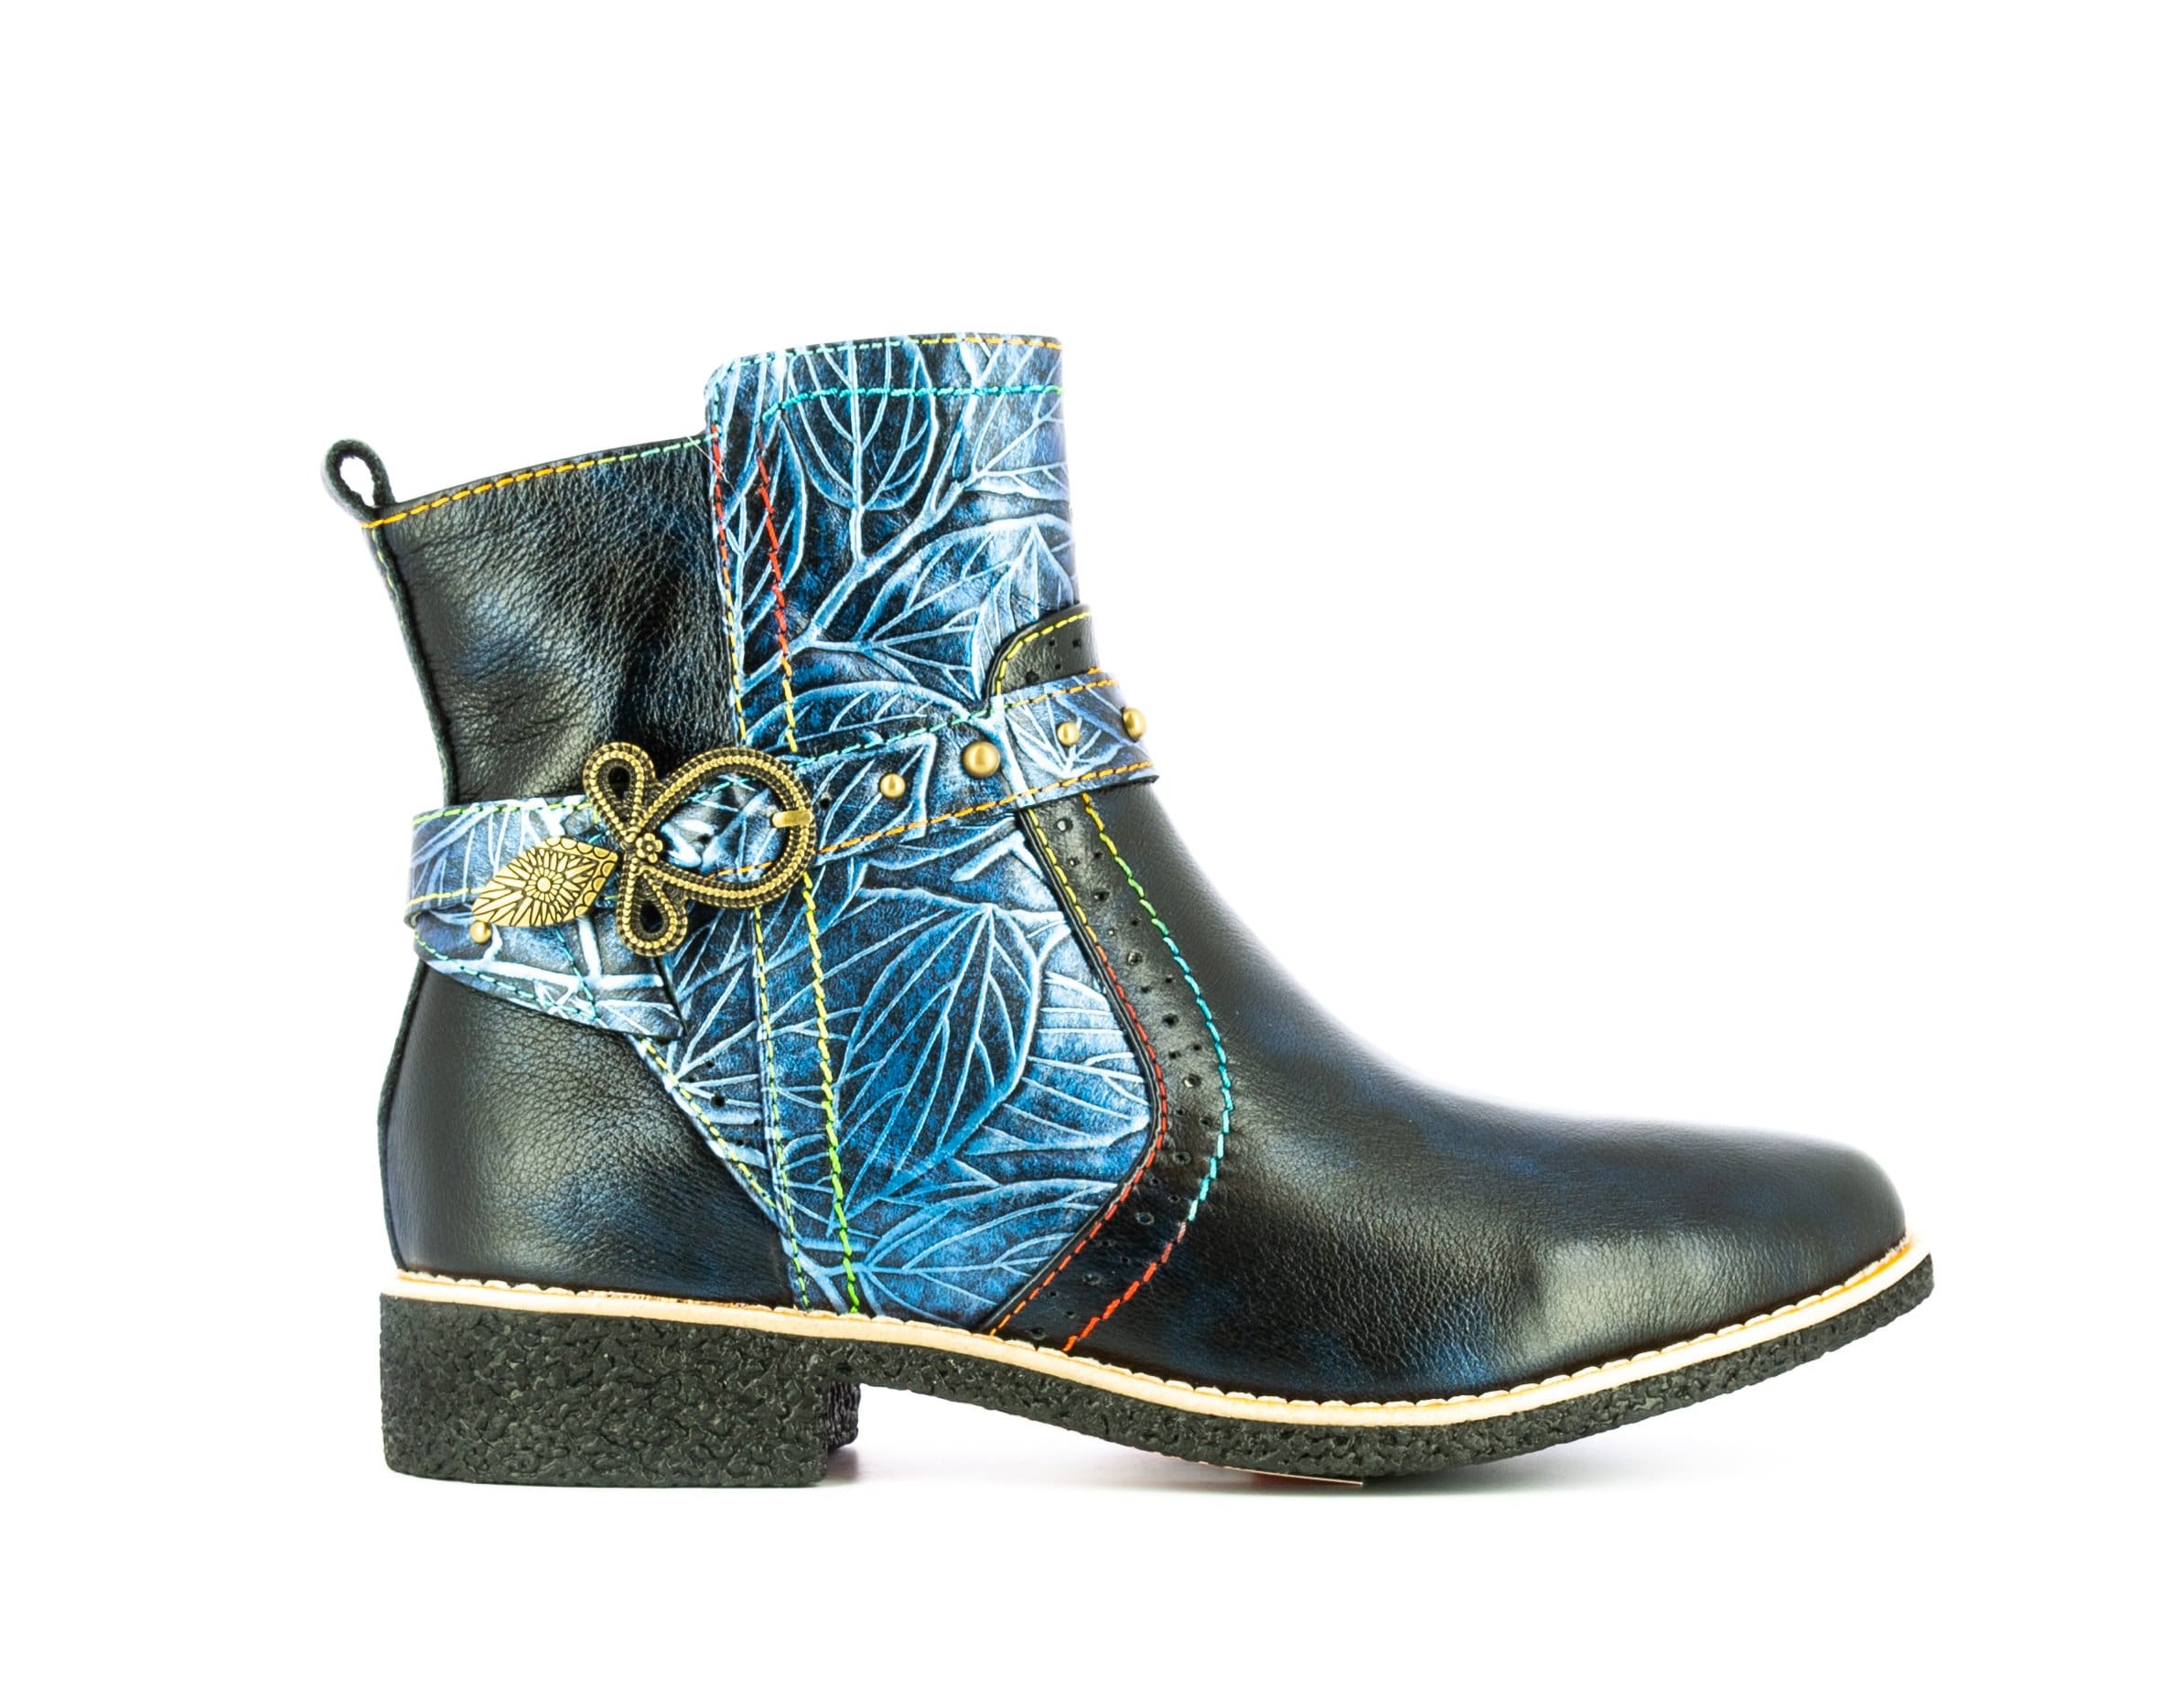 Shoe COCRALIEO 123 - 35 / Blue - Boots